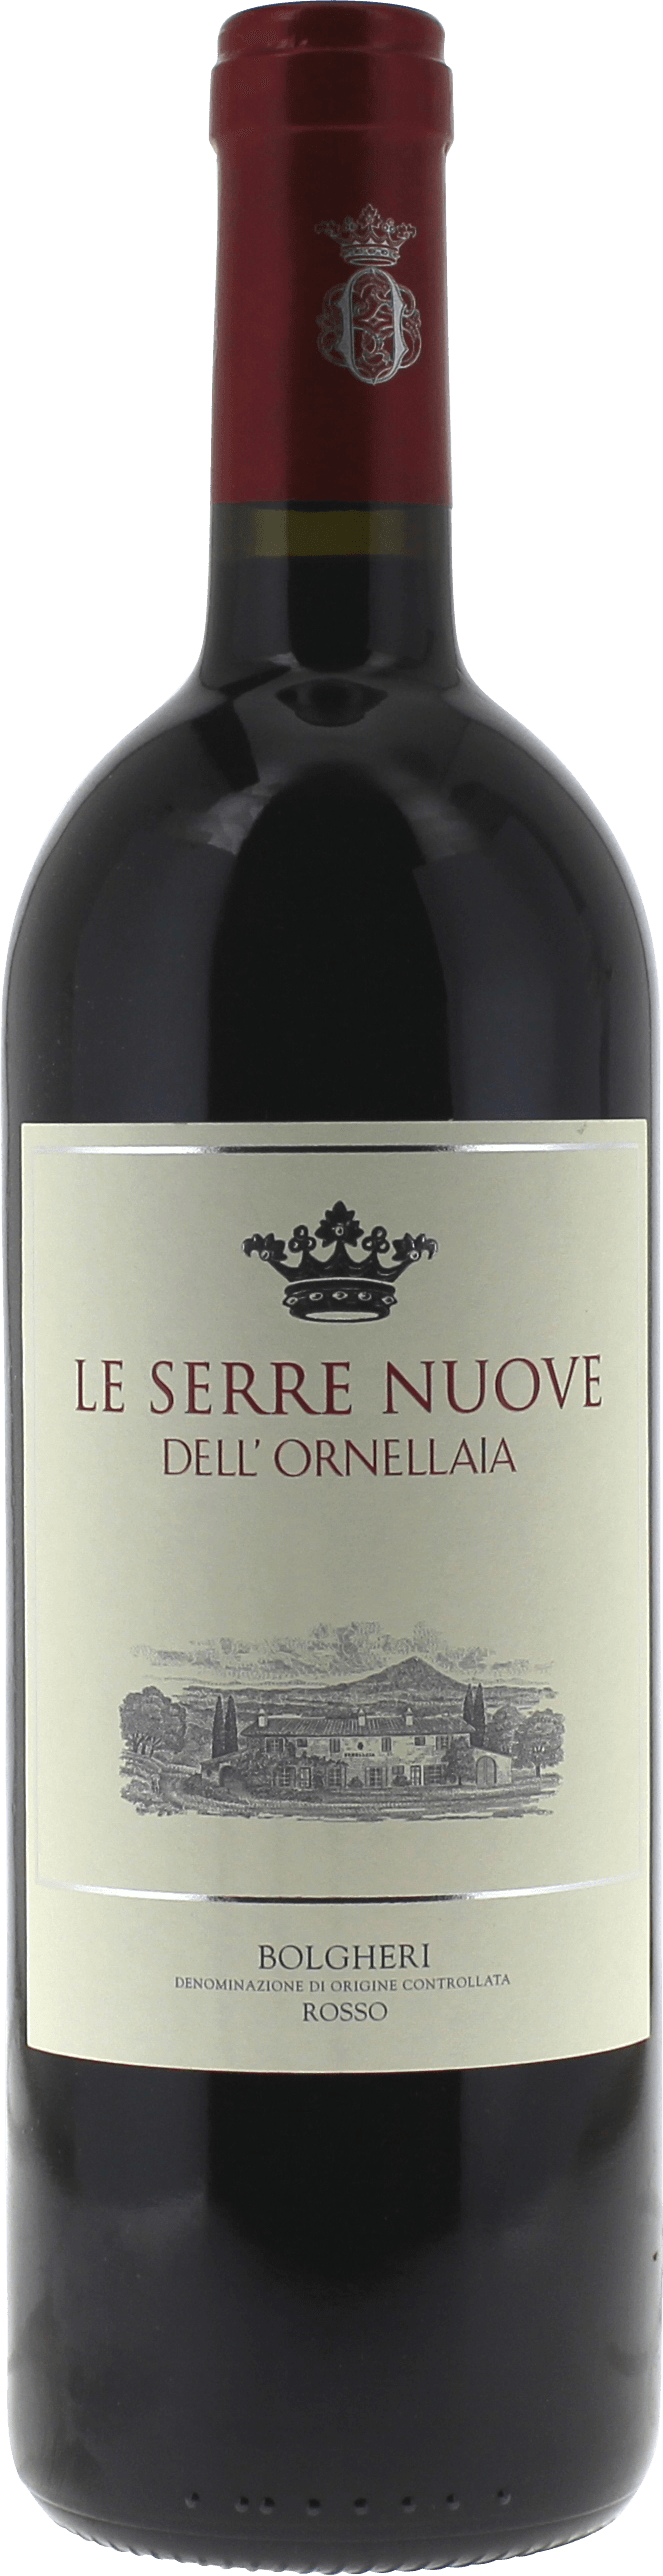 Ornellaia serre nuove 2015  Tenuta dell Ornellaia, Vin italien